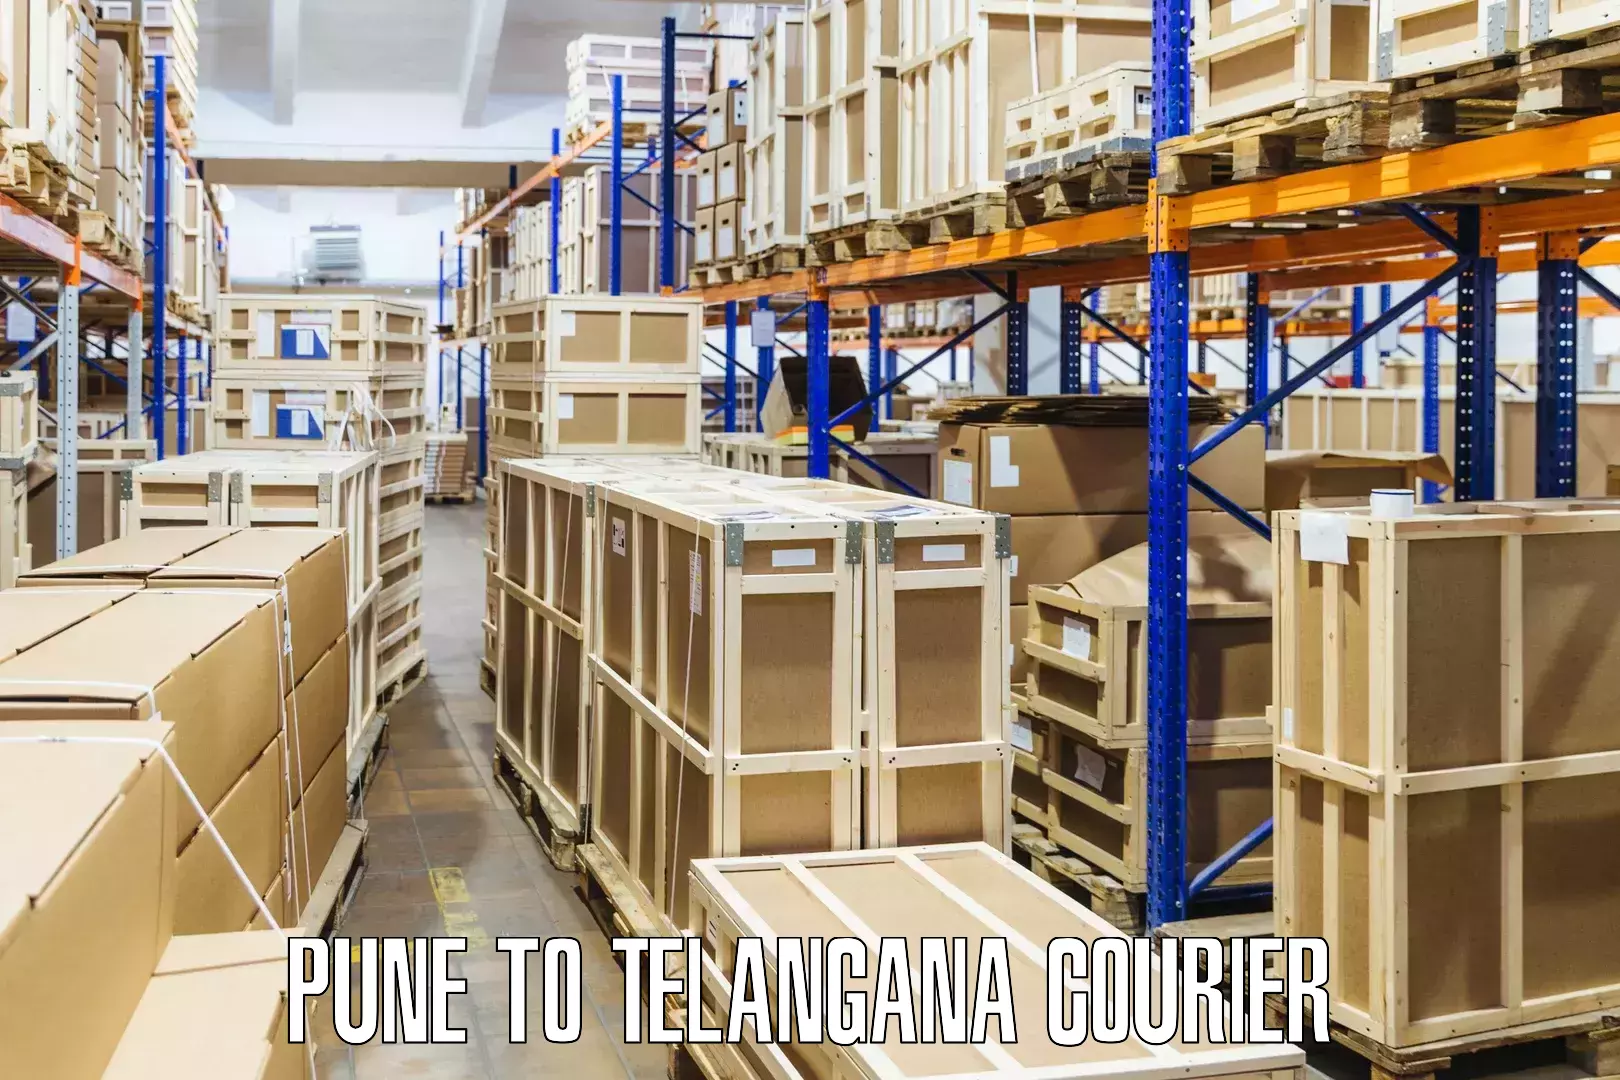 Flexible parcel services Pune to Pregnapur